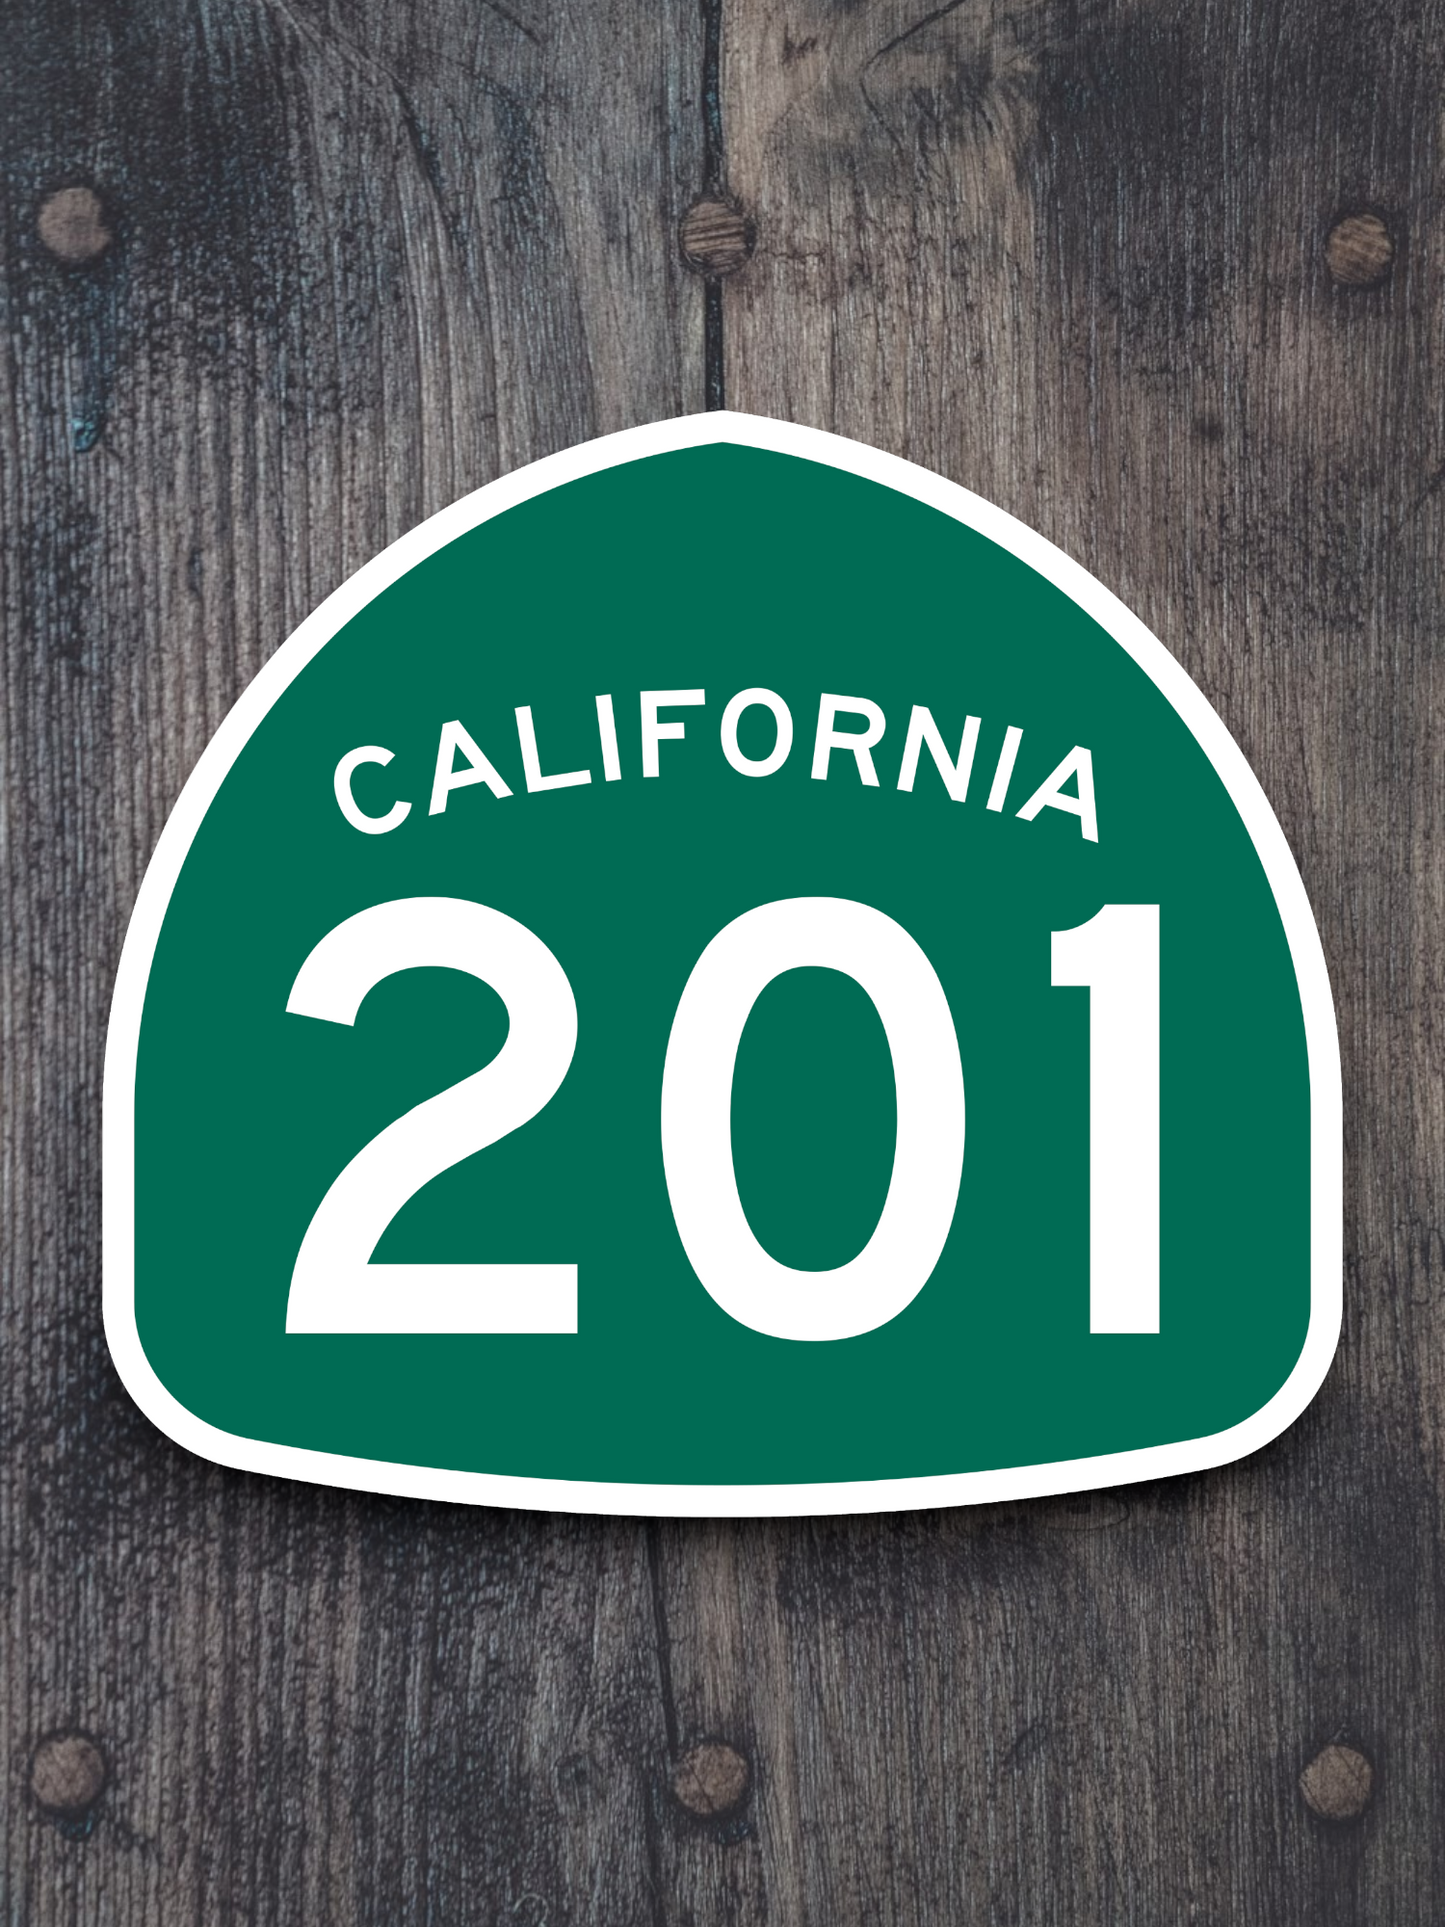 California State Route 201 Sticker